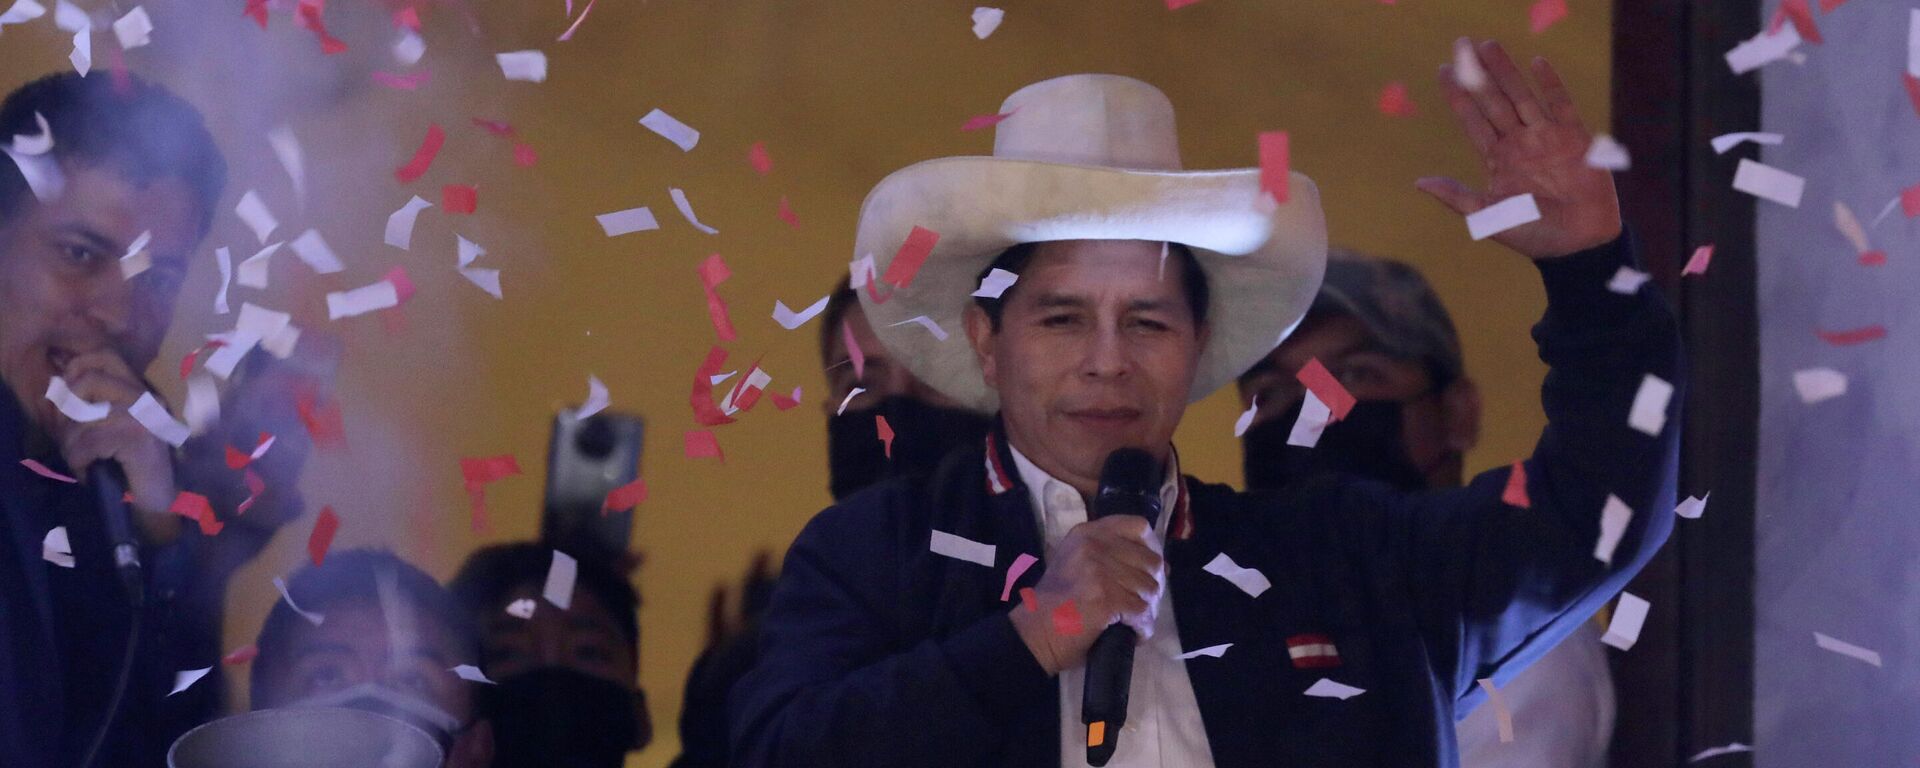 El presidente electo de Perú, Pedro Castillo, celebra su triunfo electoral - Sputnik Mundo, 1920, 07.10.2021